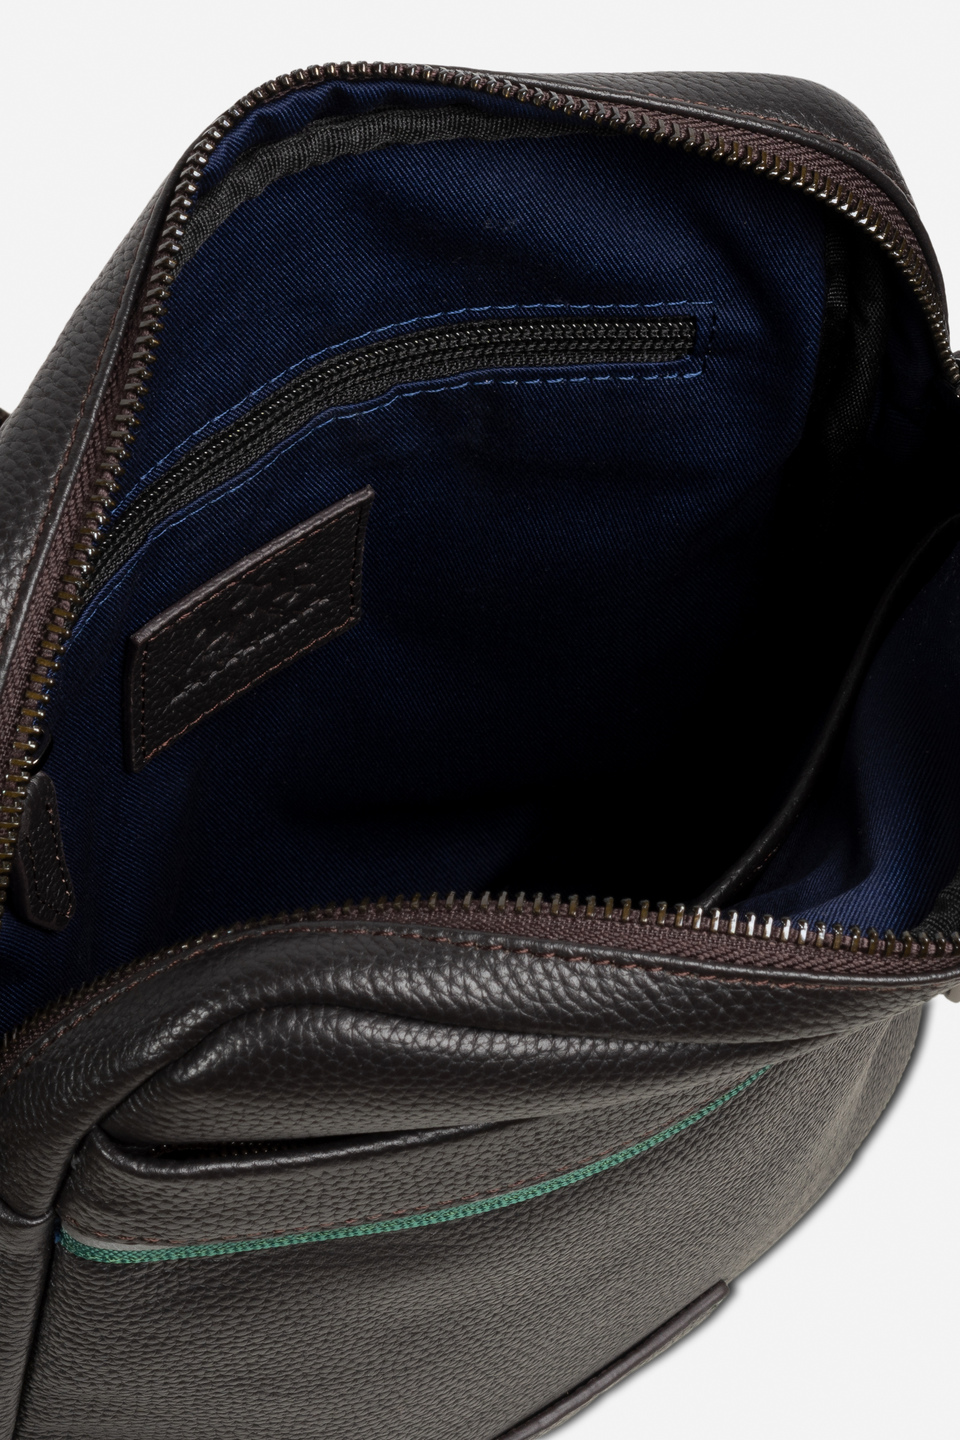 Herren Bodybag aus Leder mit Schulterriemen aus Polyesterband | La Martina - Official Online Shop